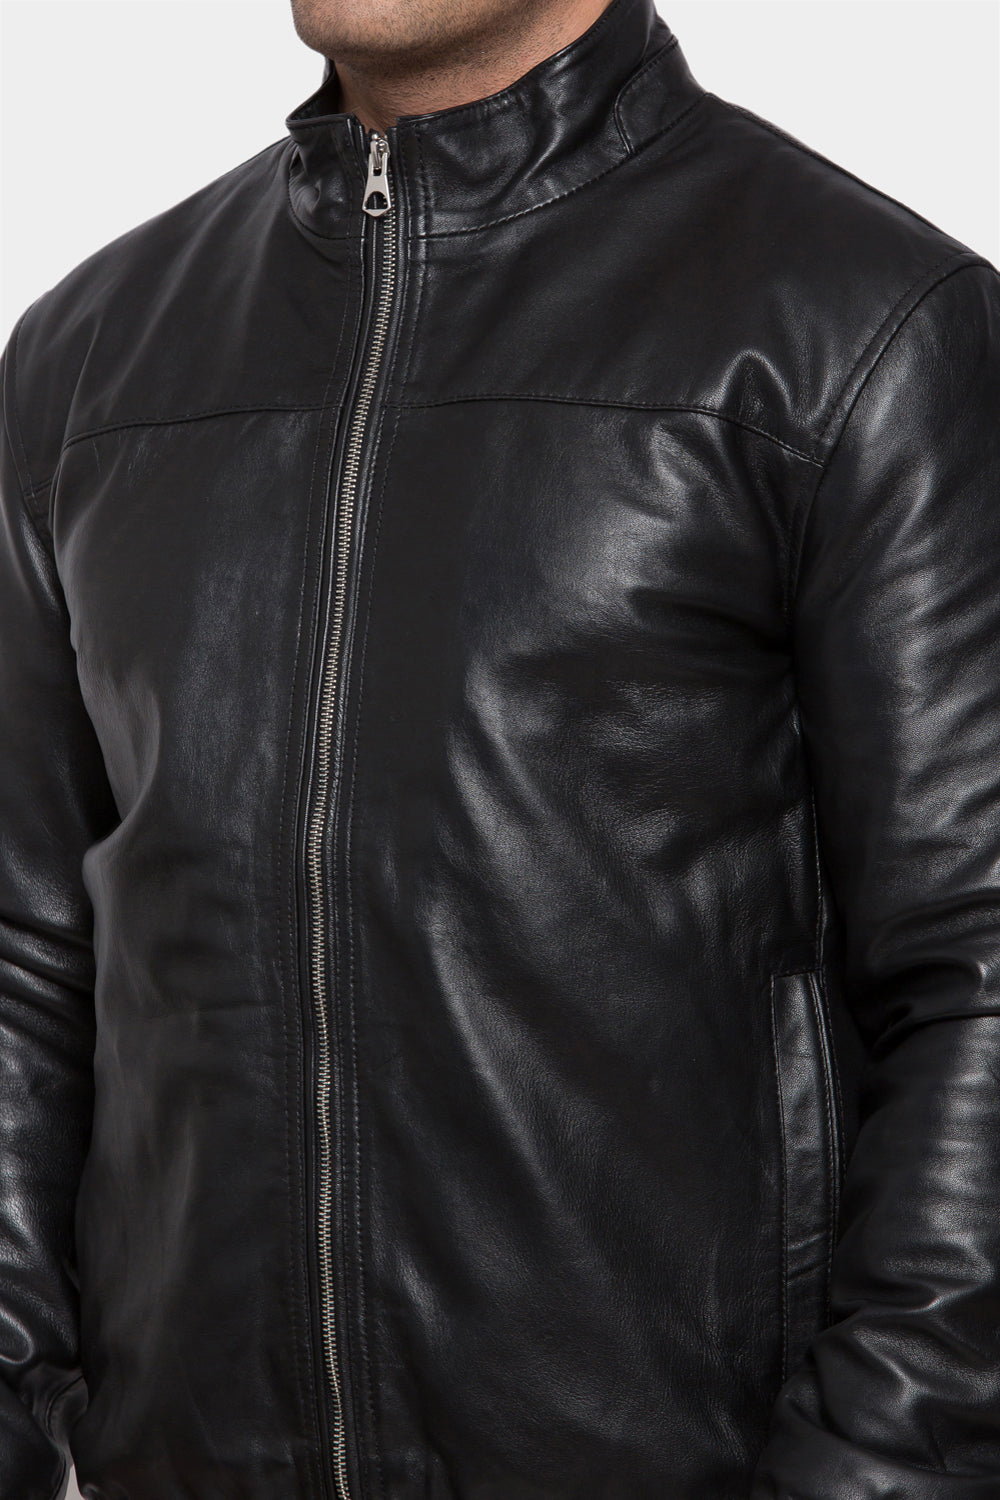 Darkened Bomber Leather Jacket